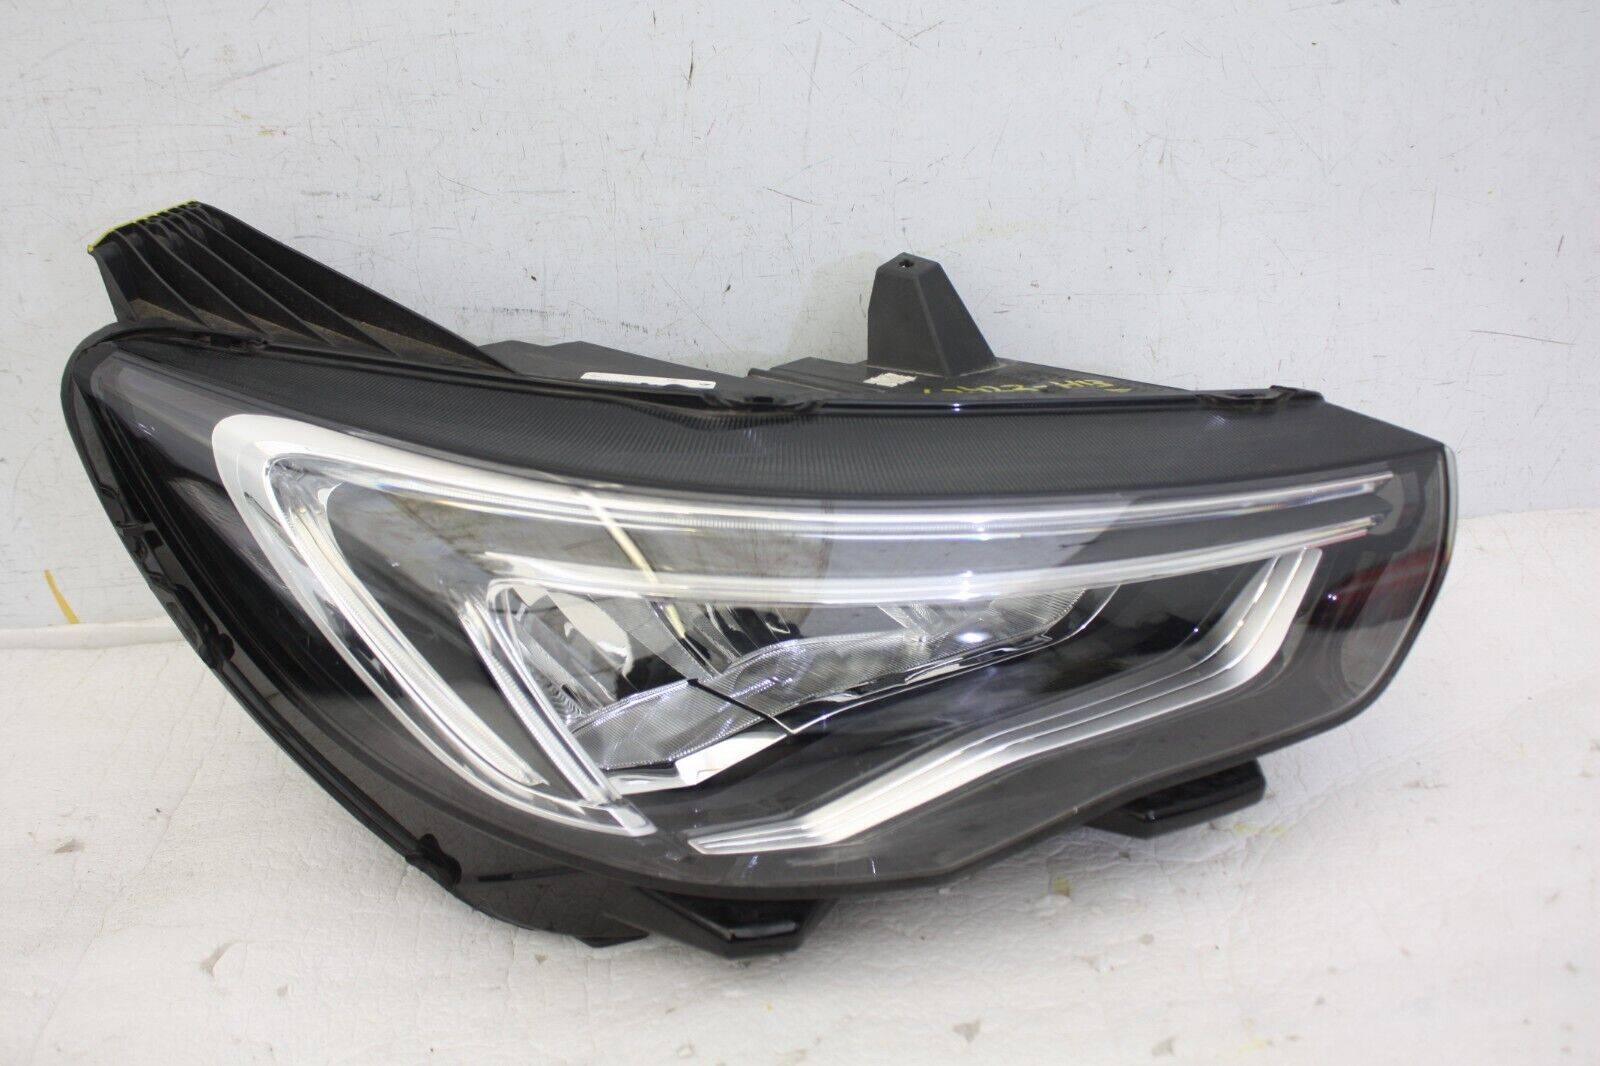 Vauxhall-Grandland-X-Right-Side-LED-Headlight-YP00162780-Genuine-DAMAGED-176421748493